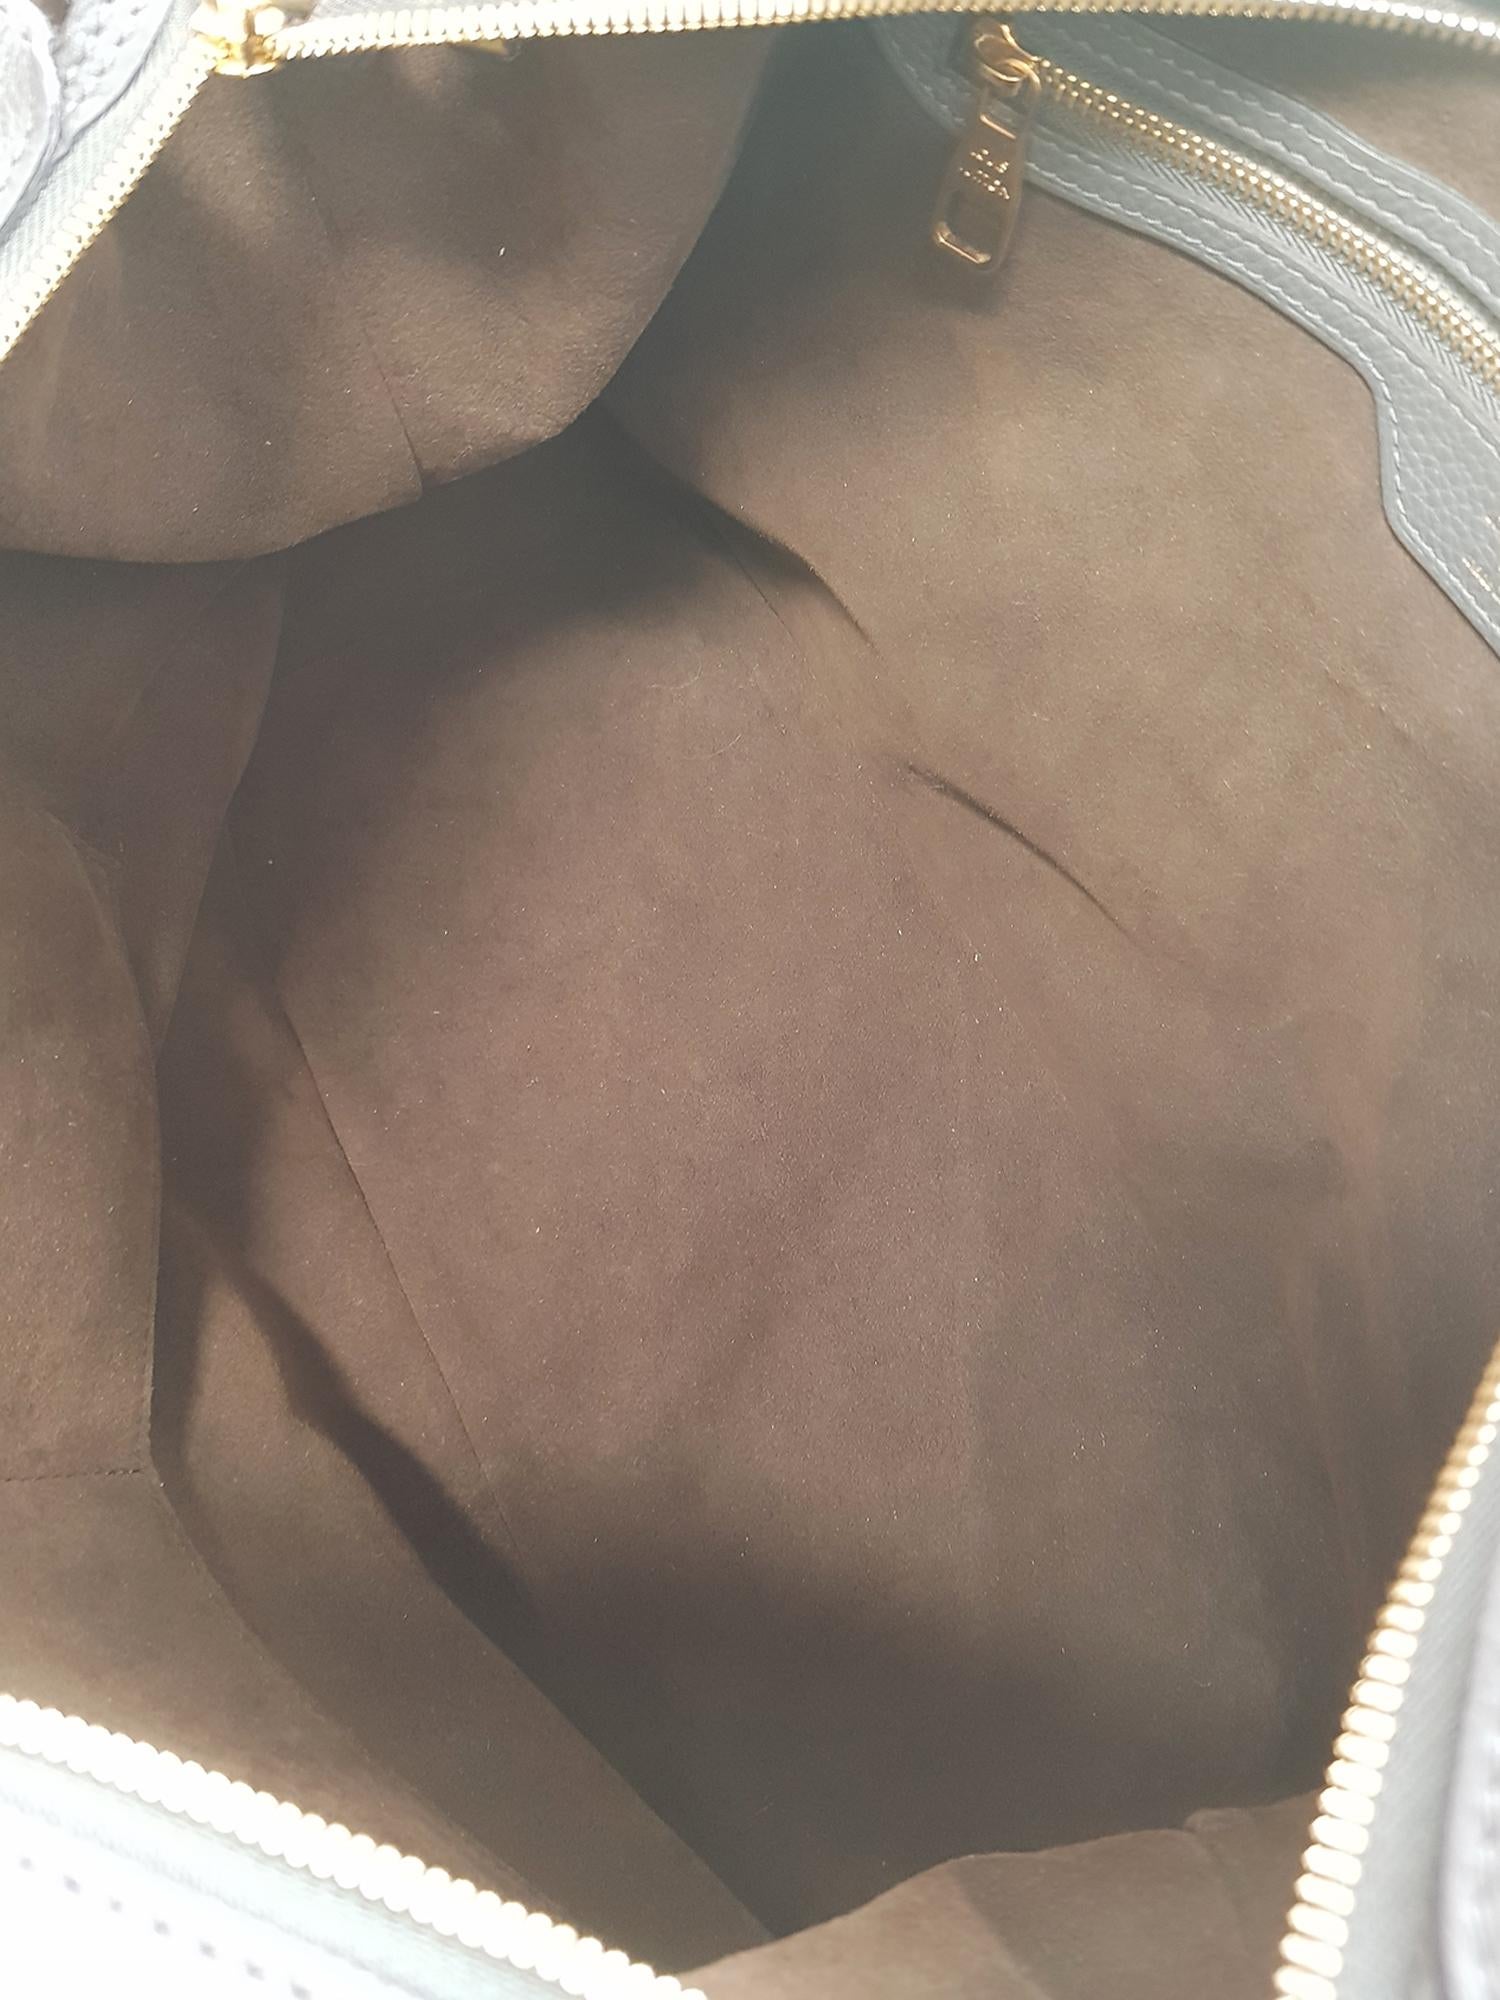 Louis Vuitton Woman Handbag Mahina Grey Leather For Sale 1